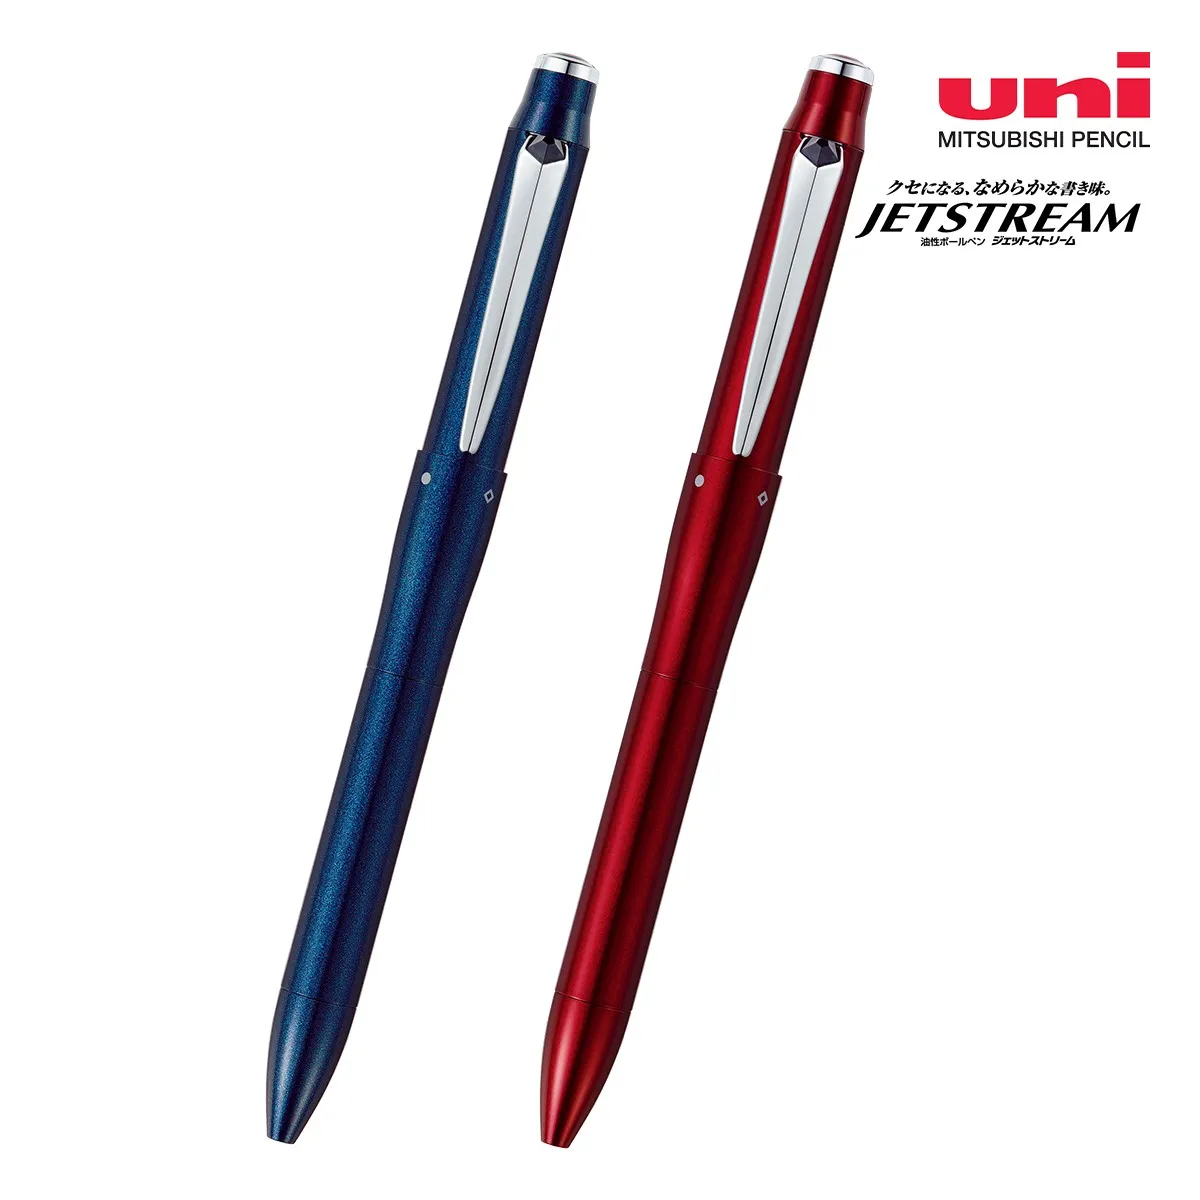 【短納期】三菱鉛筆 ジェットストリーム プライム 多機能ペン 3&1 0.5mm【多機能ペン / レーザー彫刻】 画像1